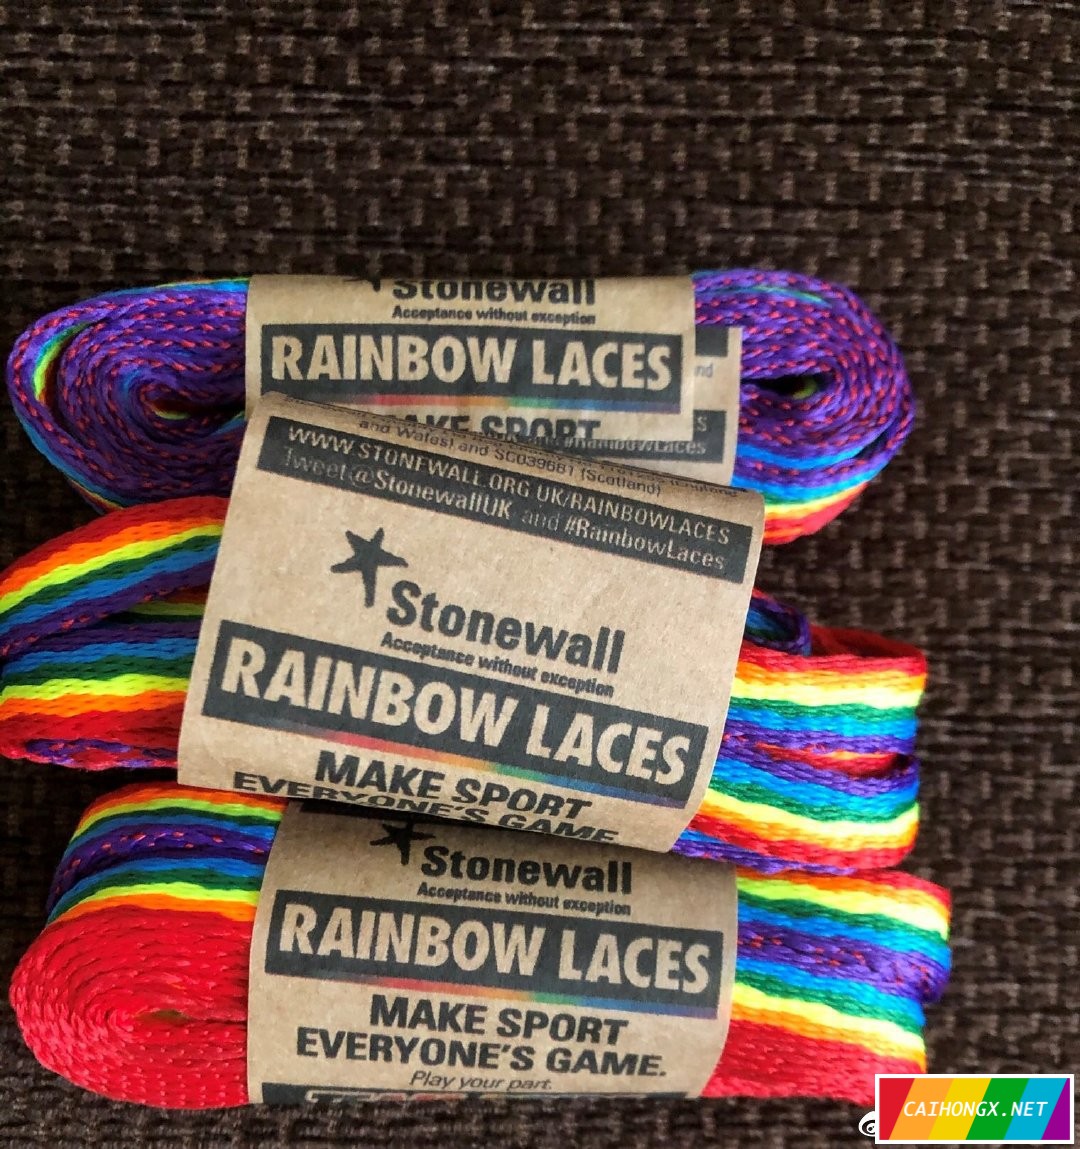 英超联赛支持LGBT，彩虹鞋带传递信息 LGBT